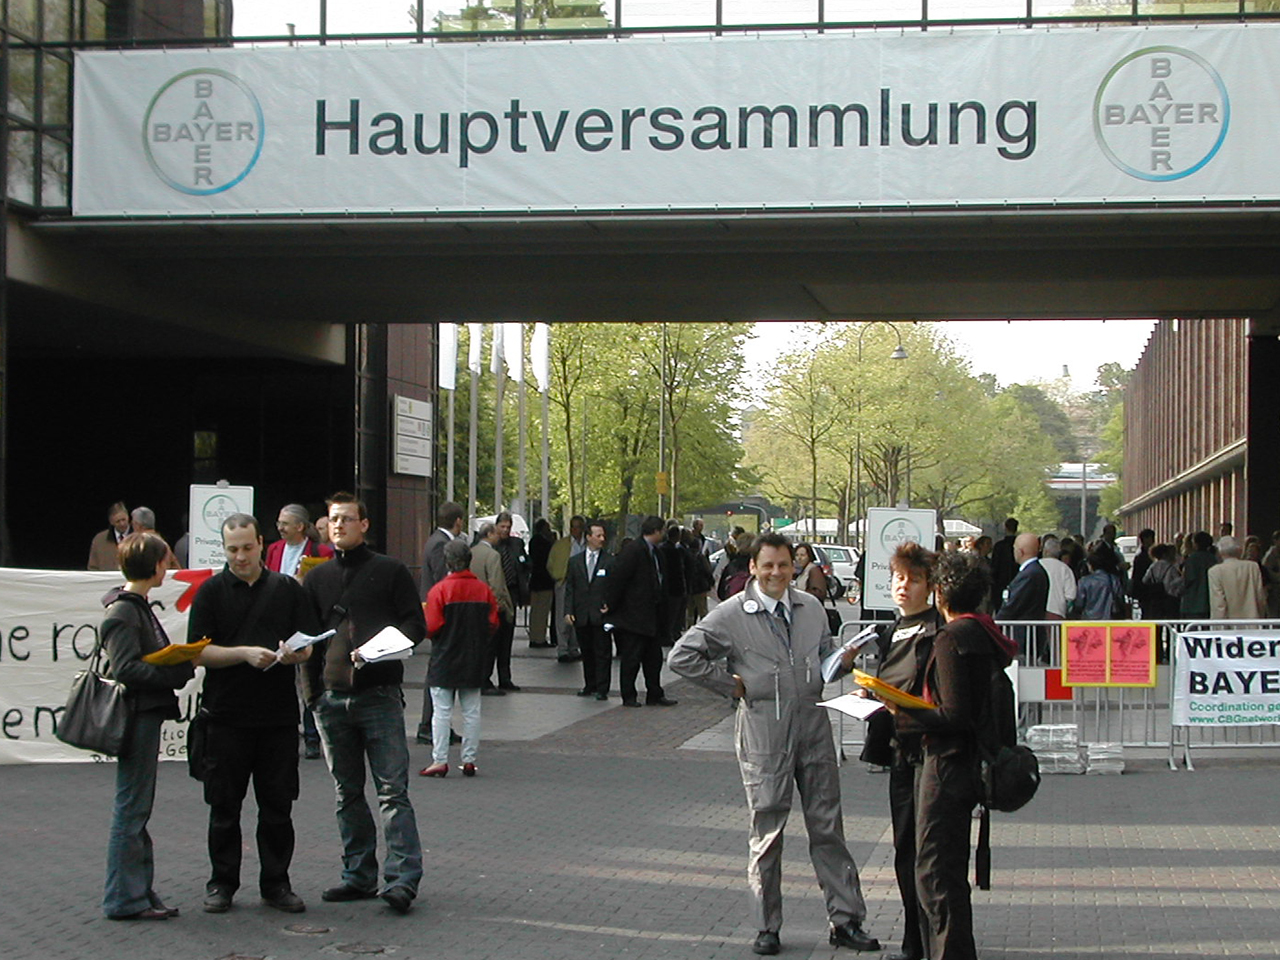 padeluun und Rena vor dem Eingang zur Bayer-Hauptversammlung.